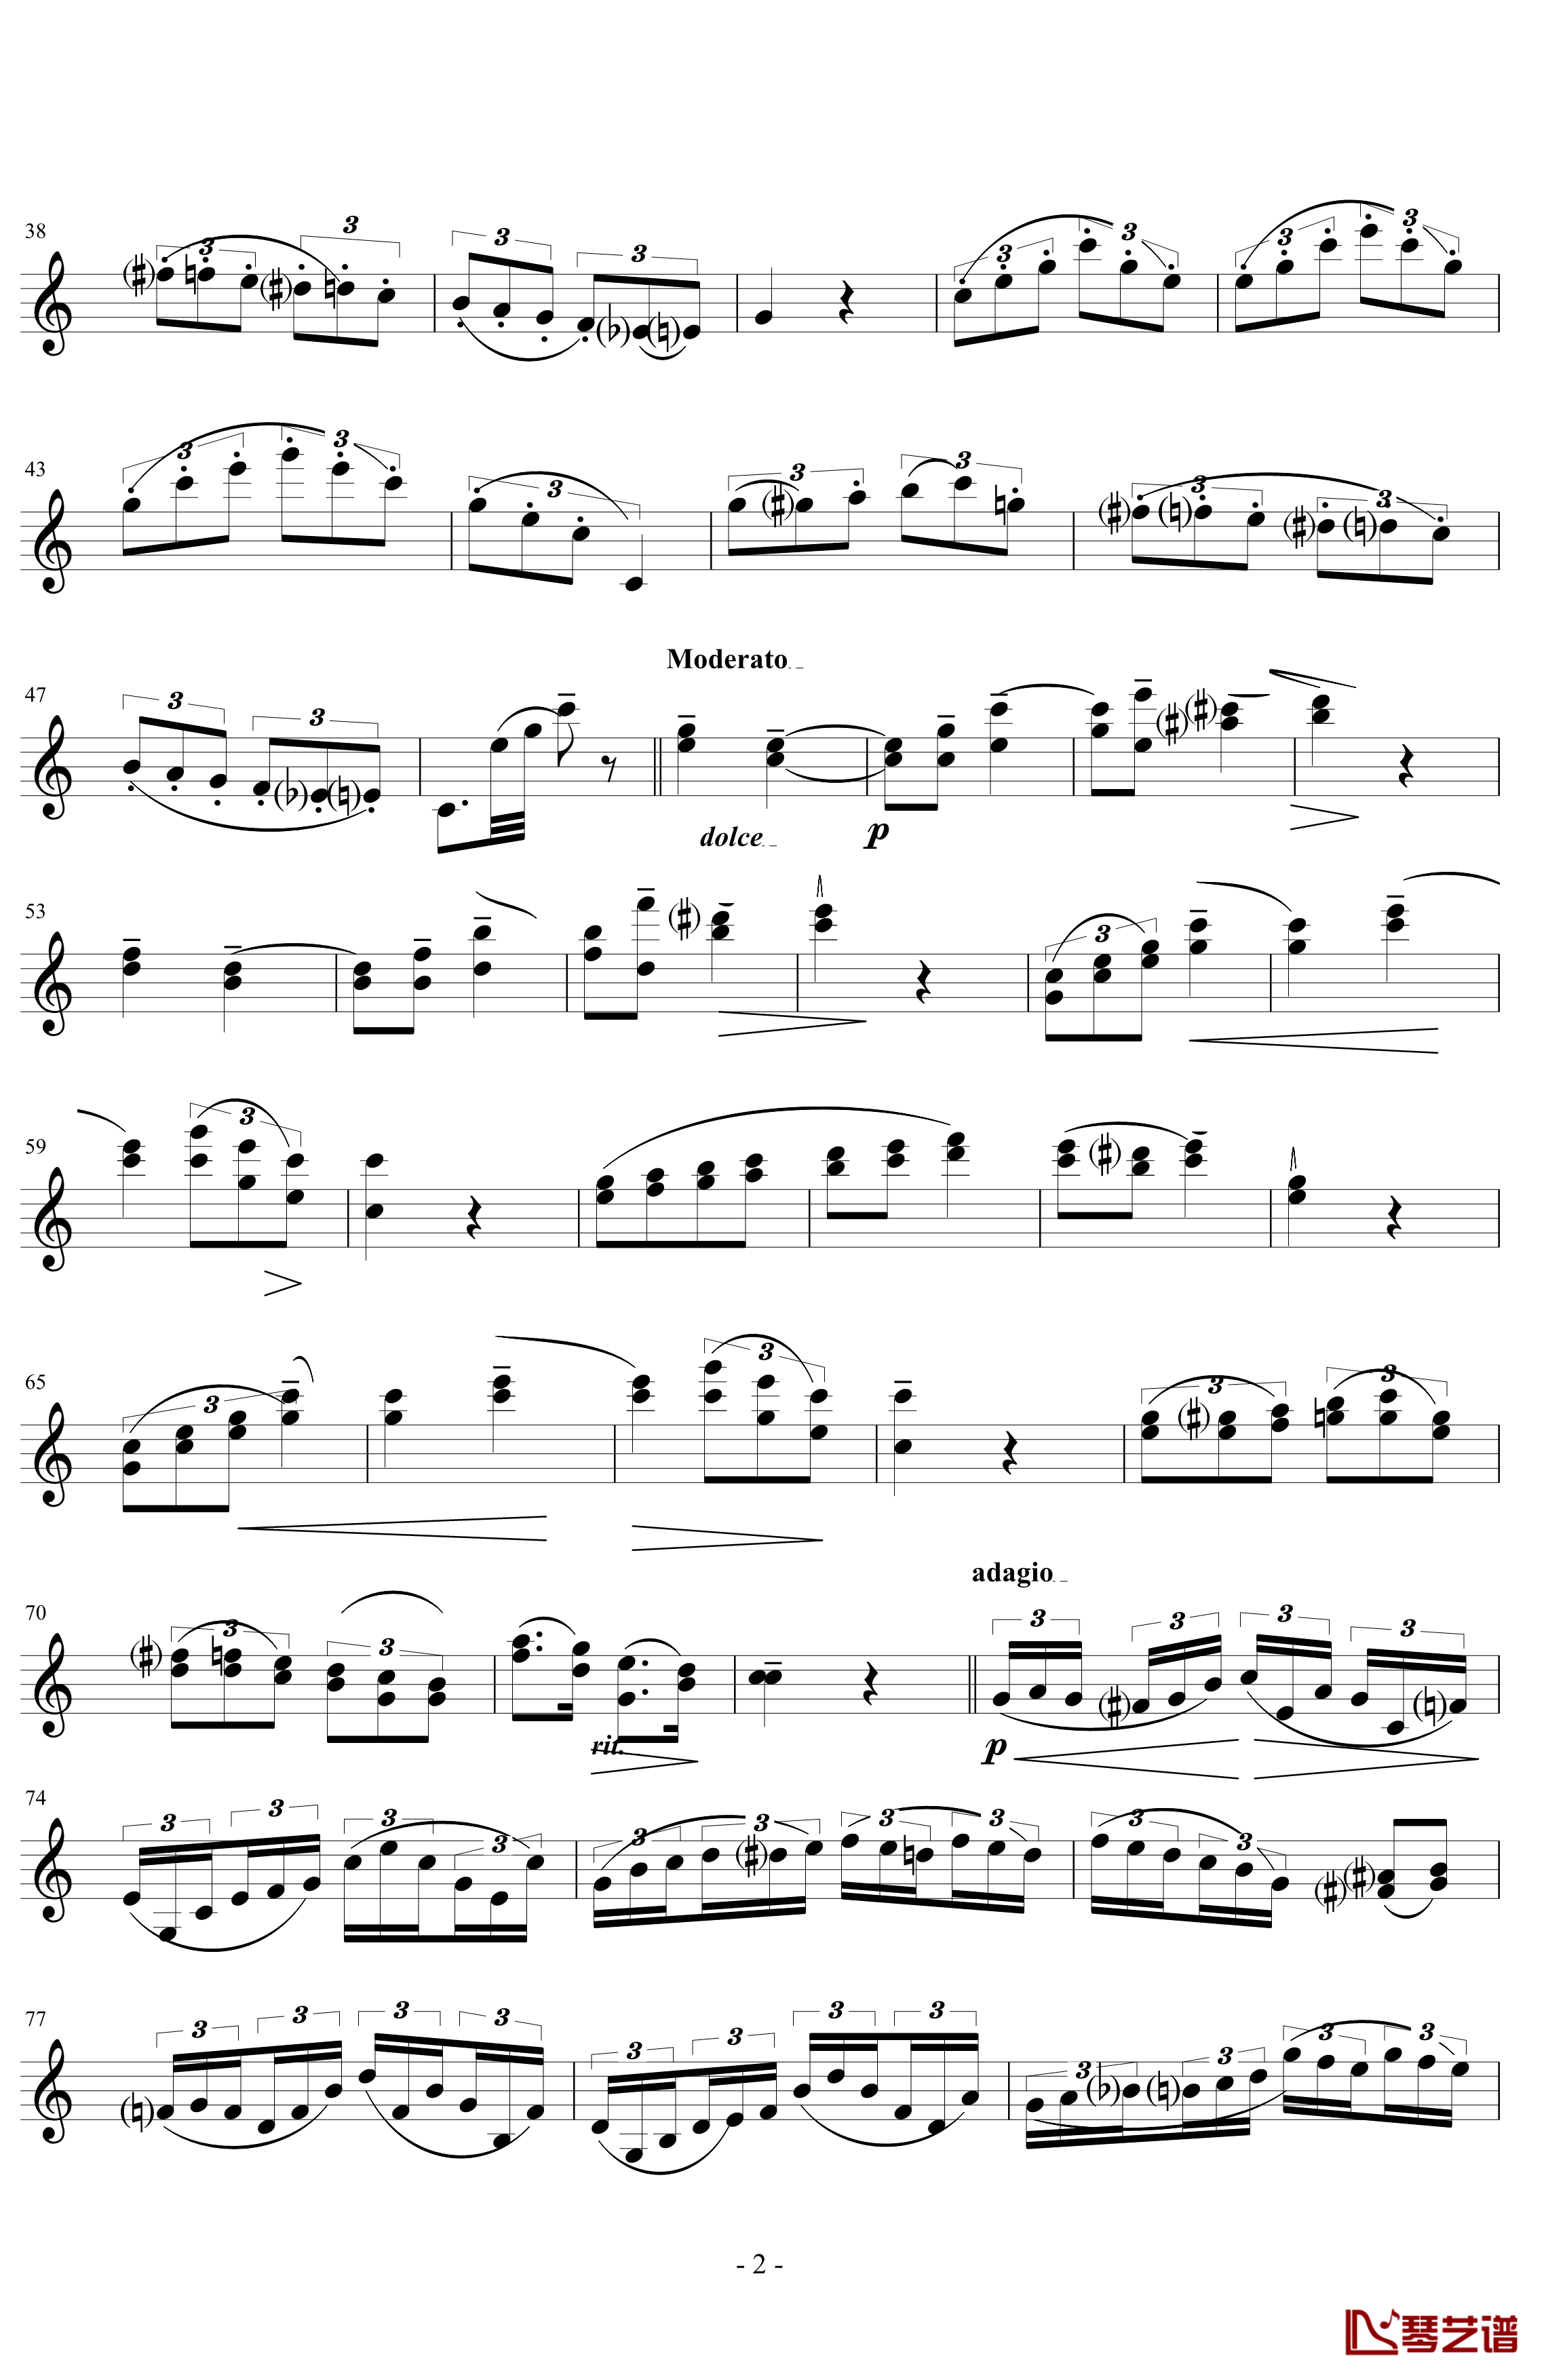 莫扎特主题炫技变奏曲钢琴谱-小提琴版-莫扎特2